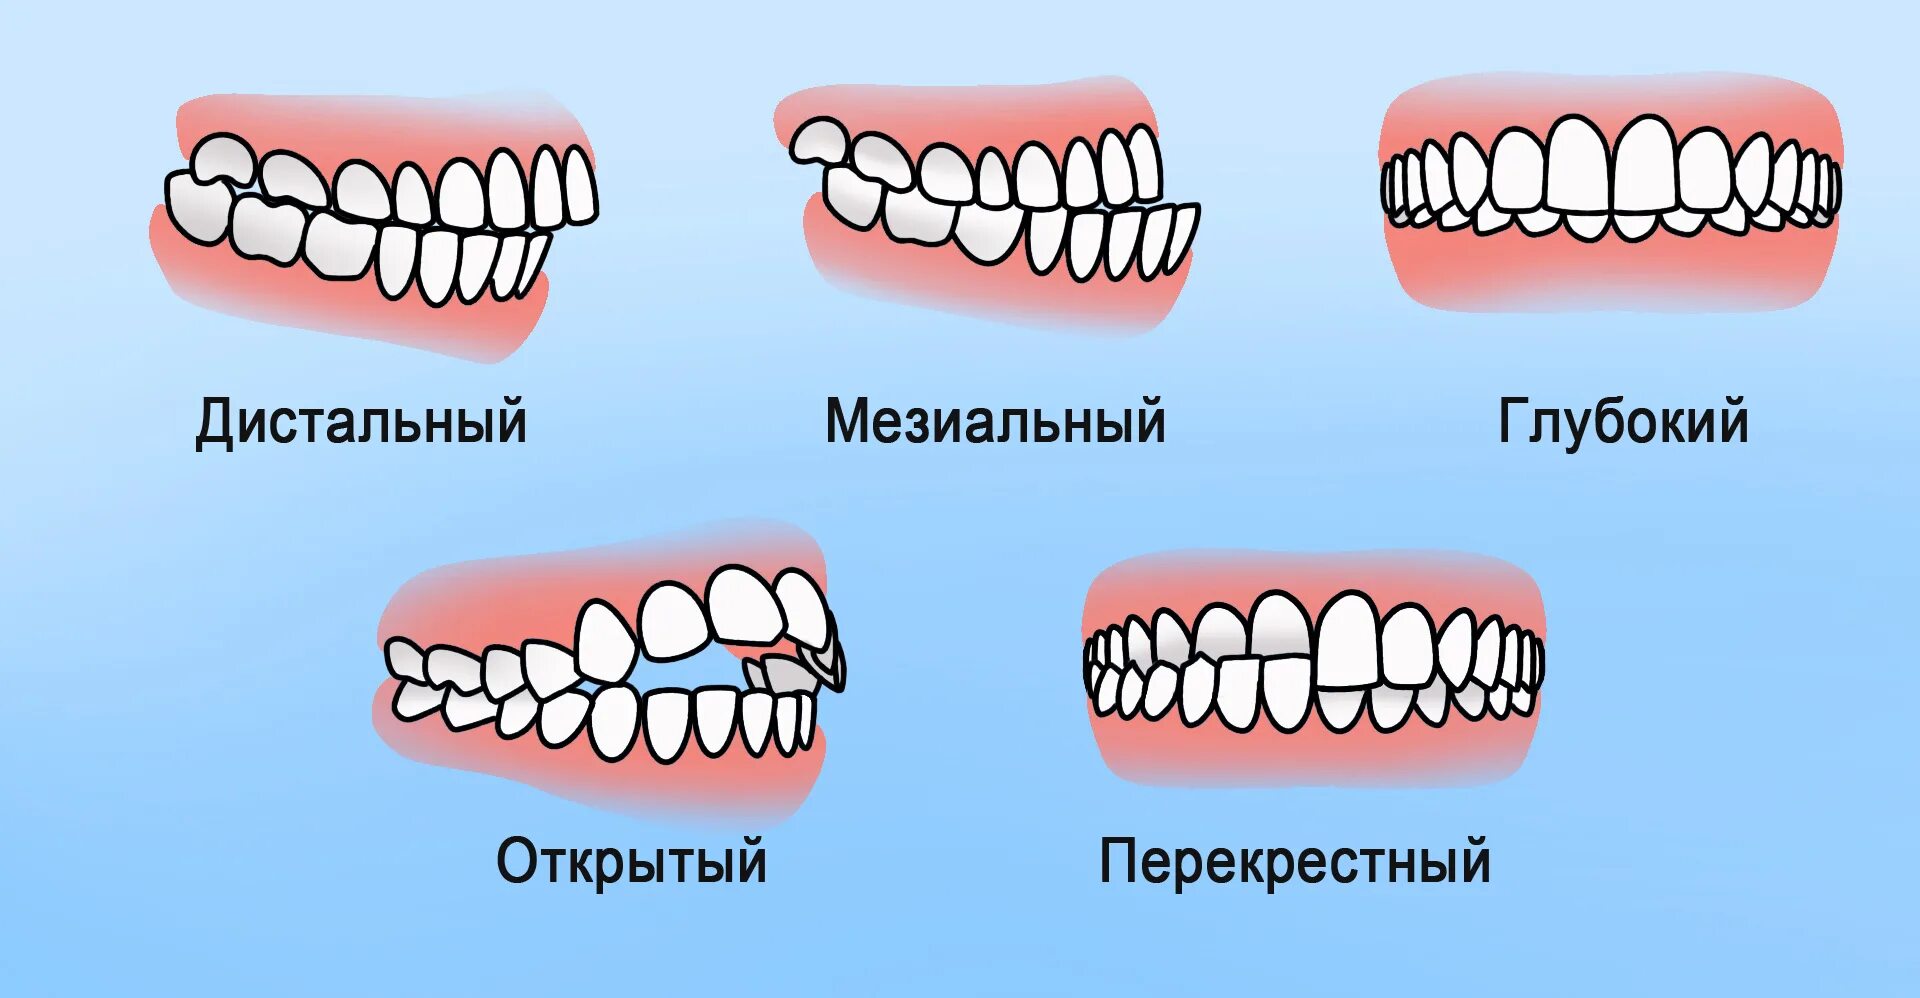 Почему зубы отличаются между собой. Правильный и неправильный прикус и челюсть. Правильный прикус зубов у человека. Правильный прикус зубов у человека и неправильный. Прикус зубов правильный прикус.